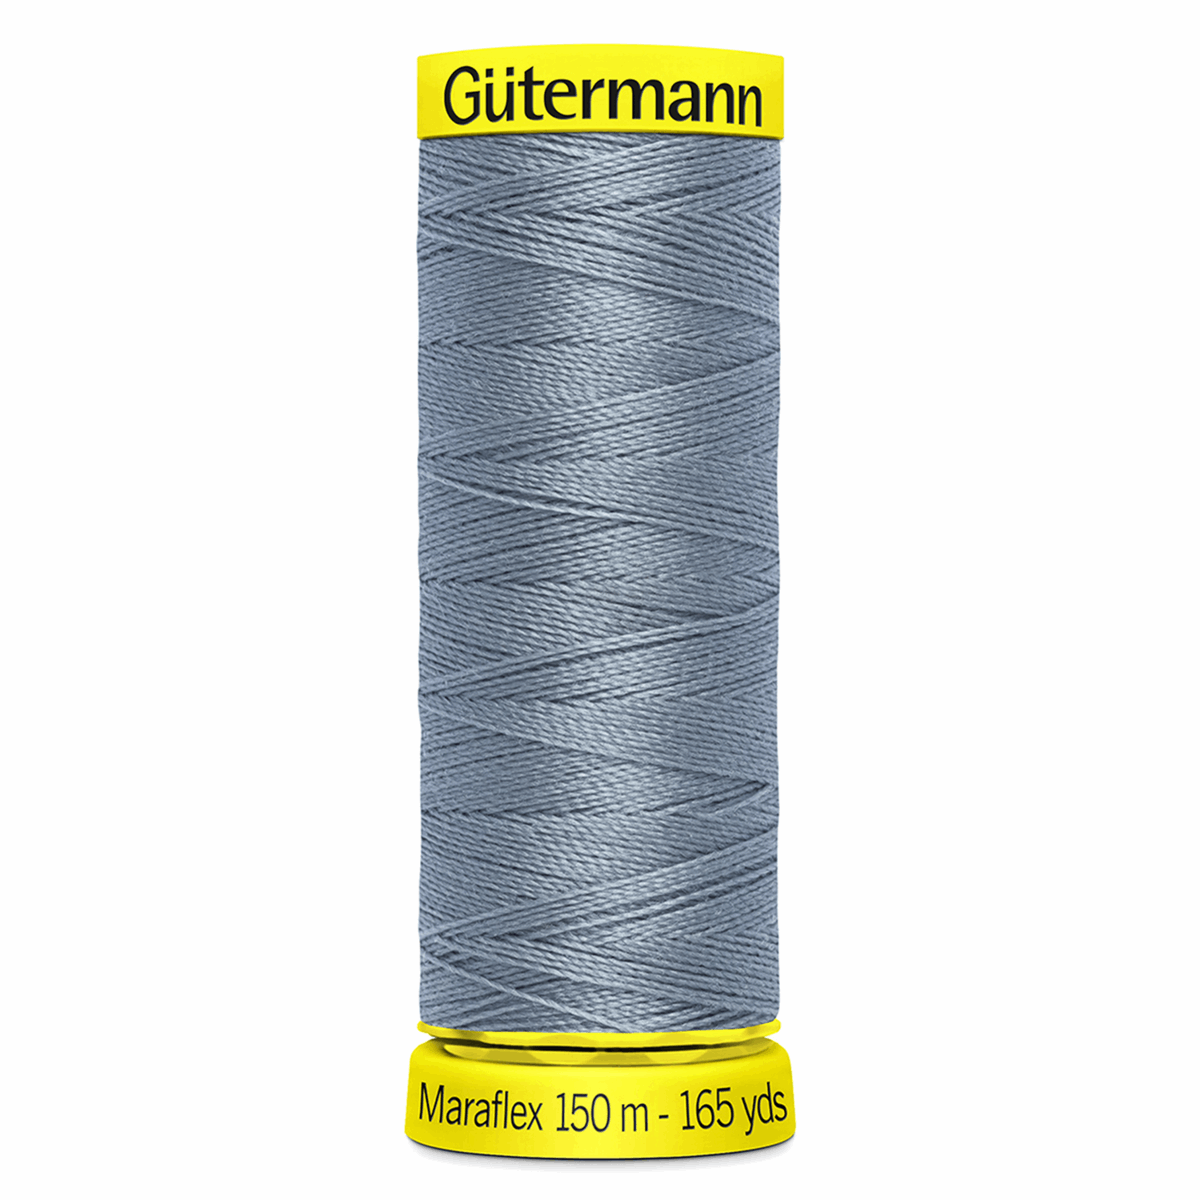 Gutermann Maraflex Elastic Sewing Thread 150m Sky Blue 64